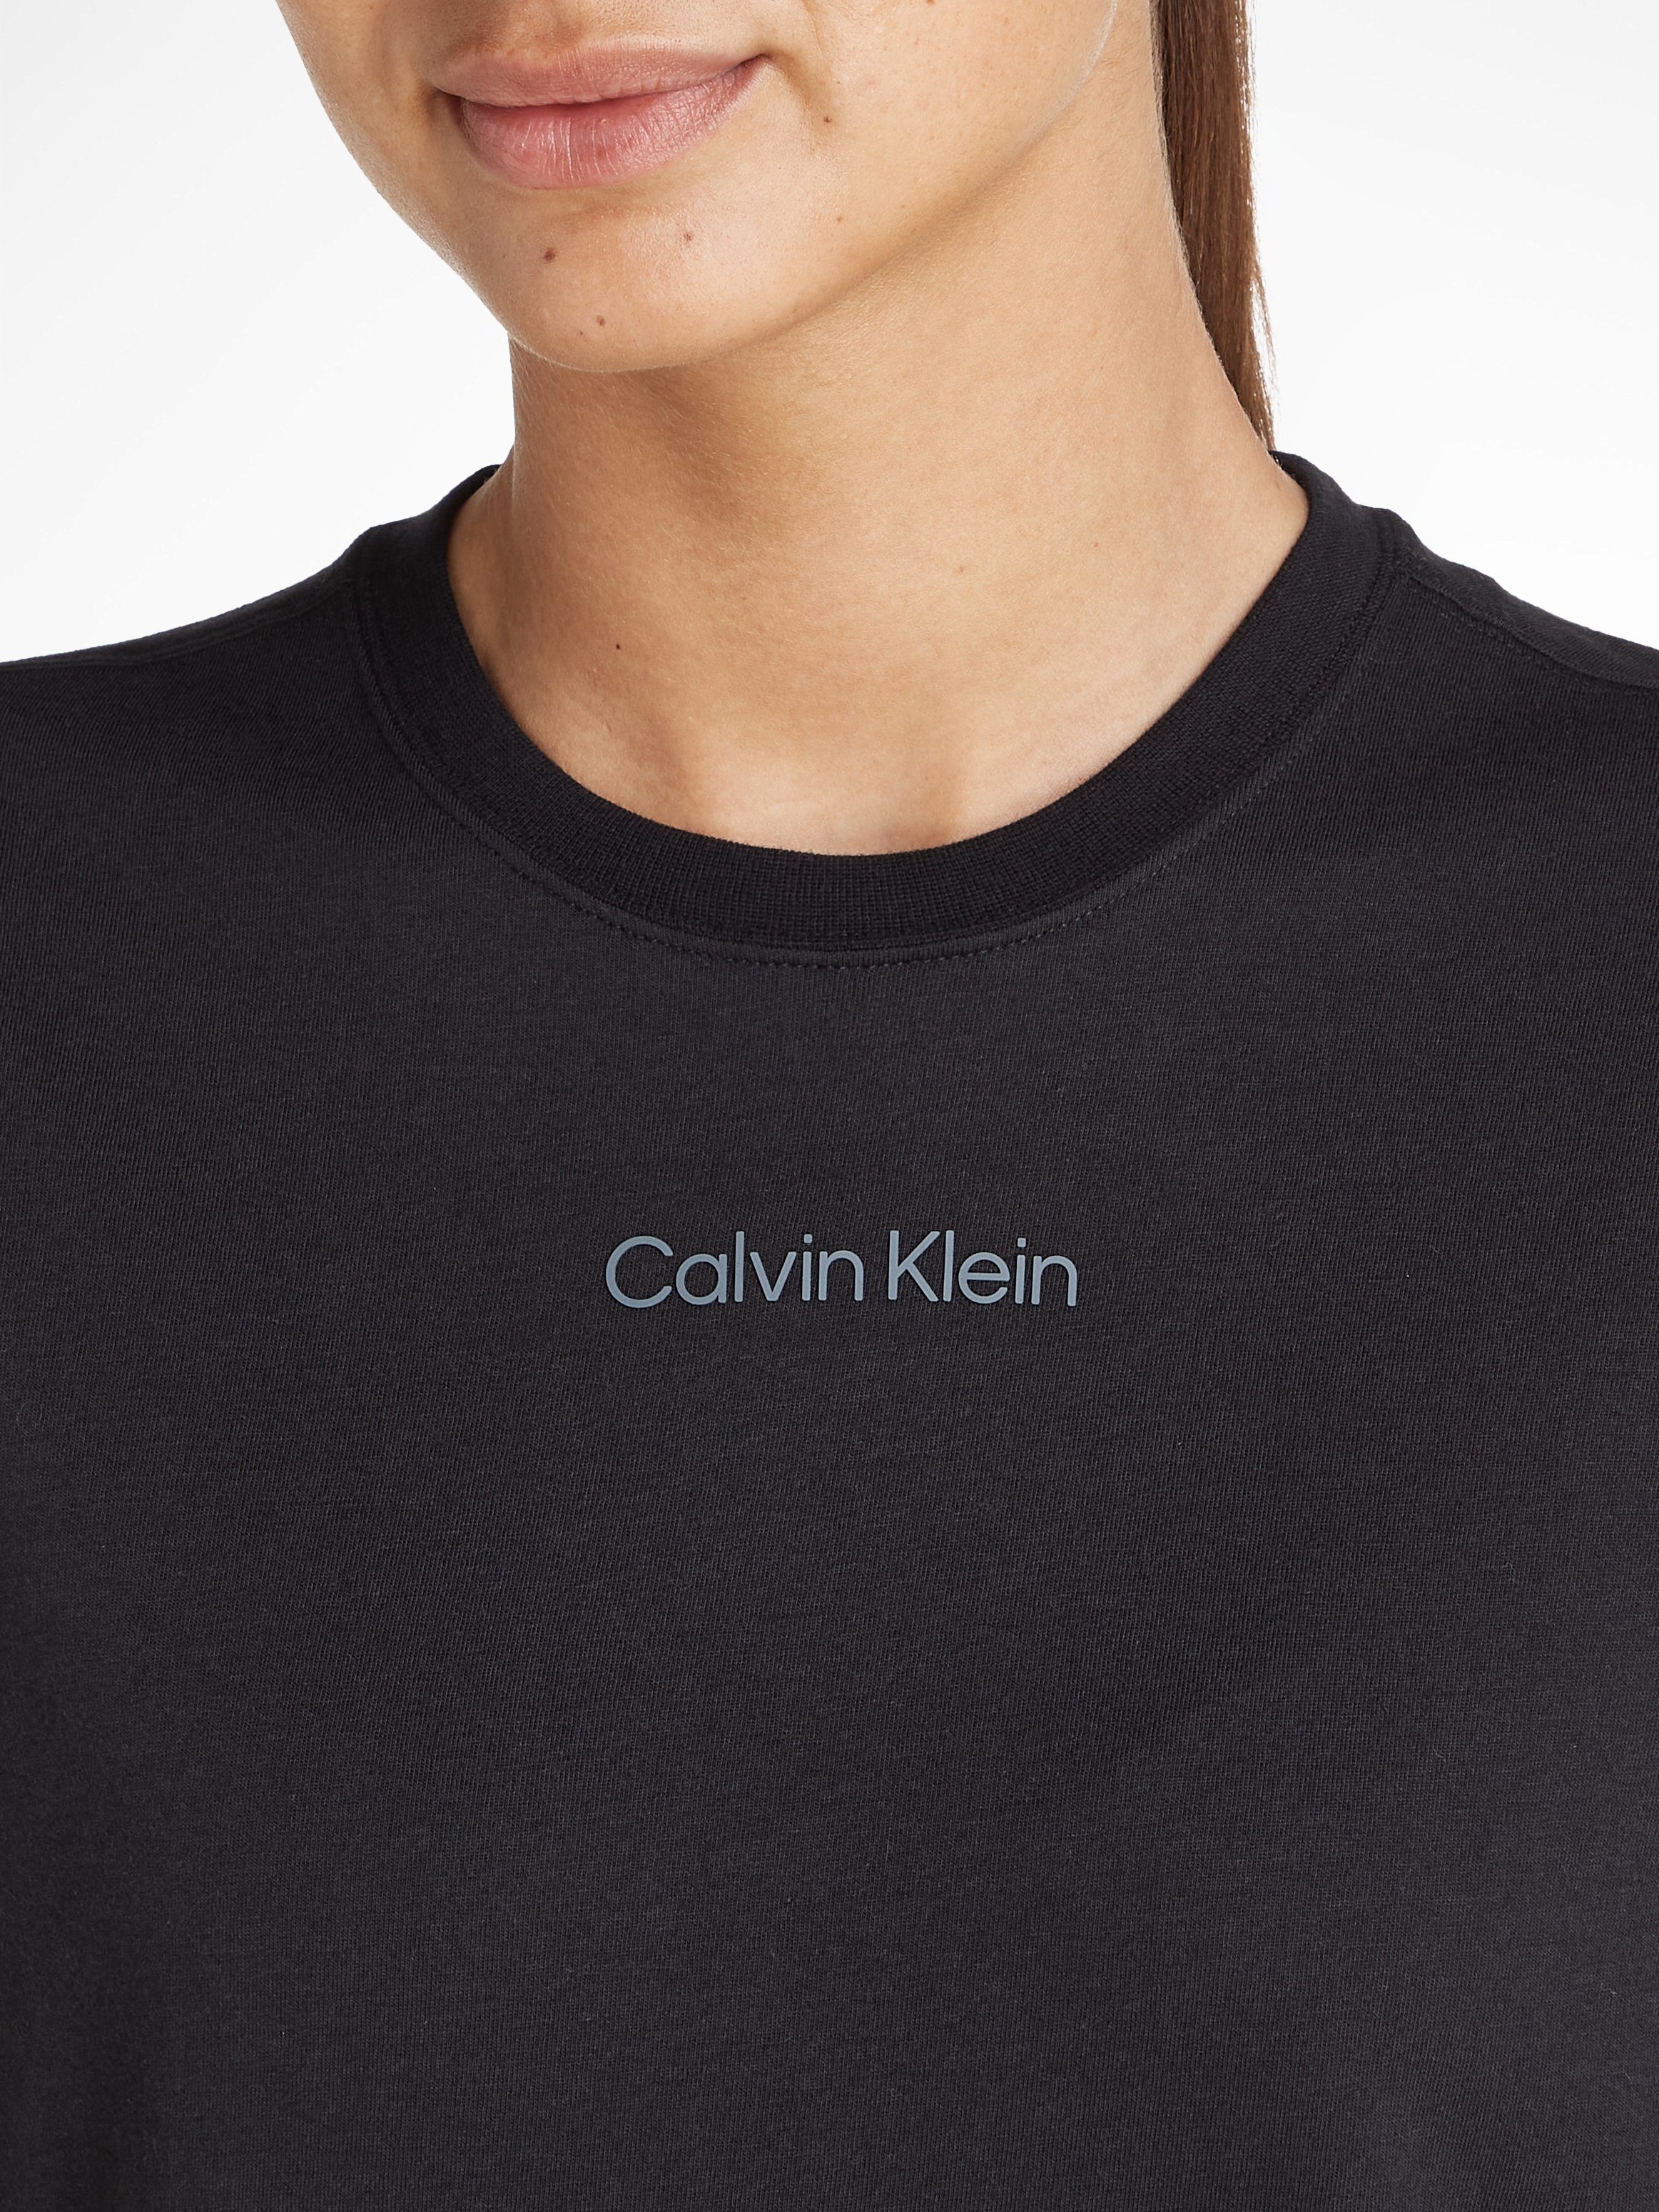 Calvin Klein Sport T-Shirt schwarz